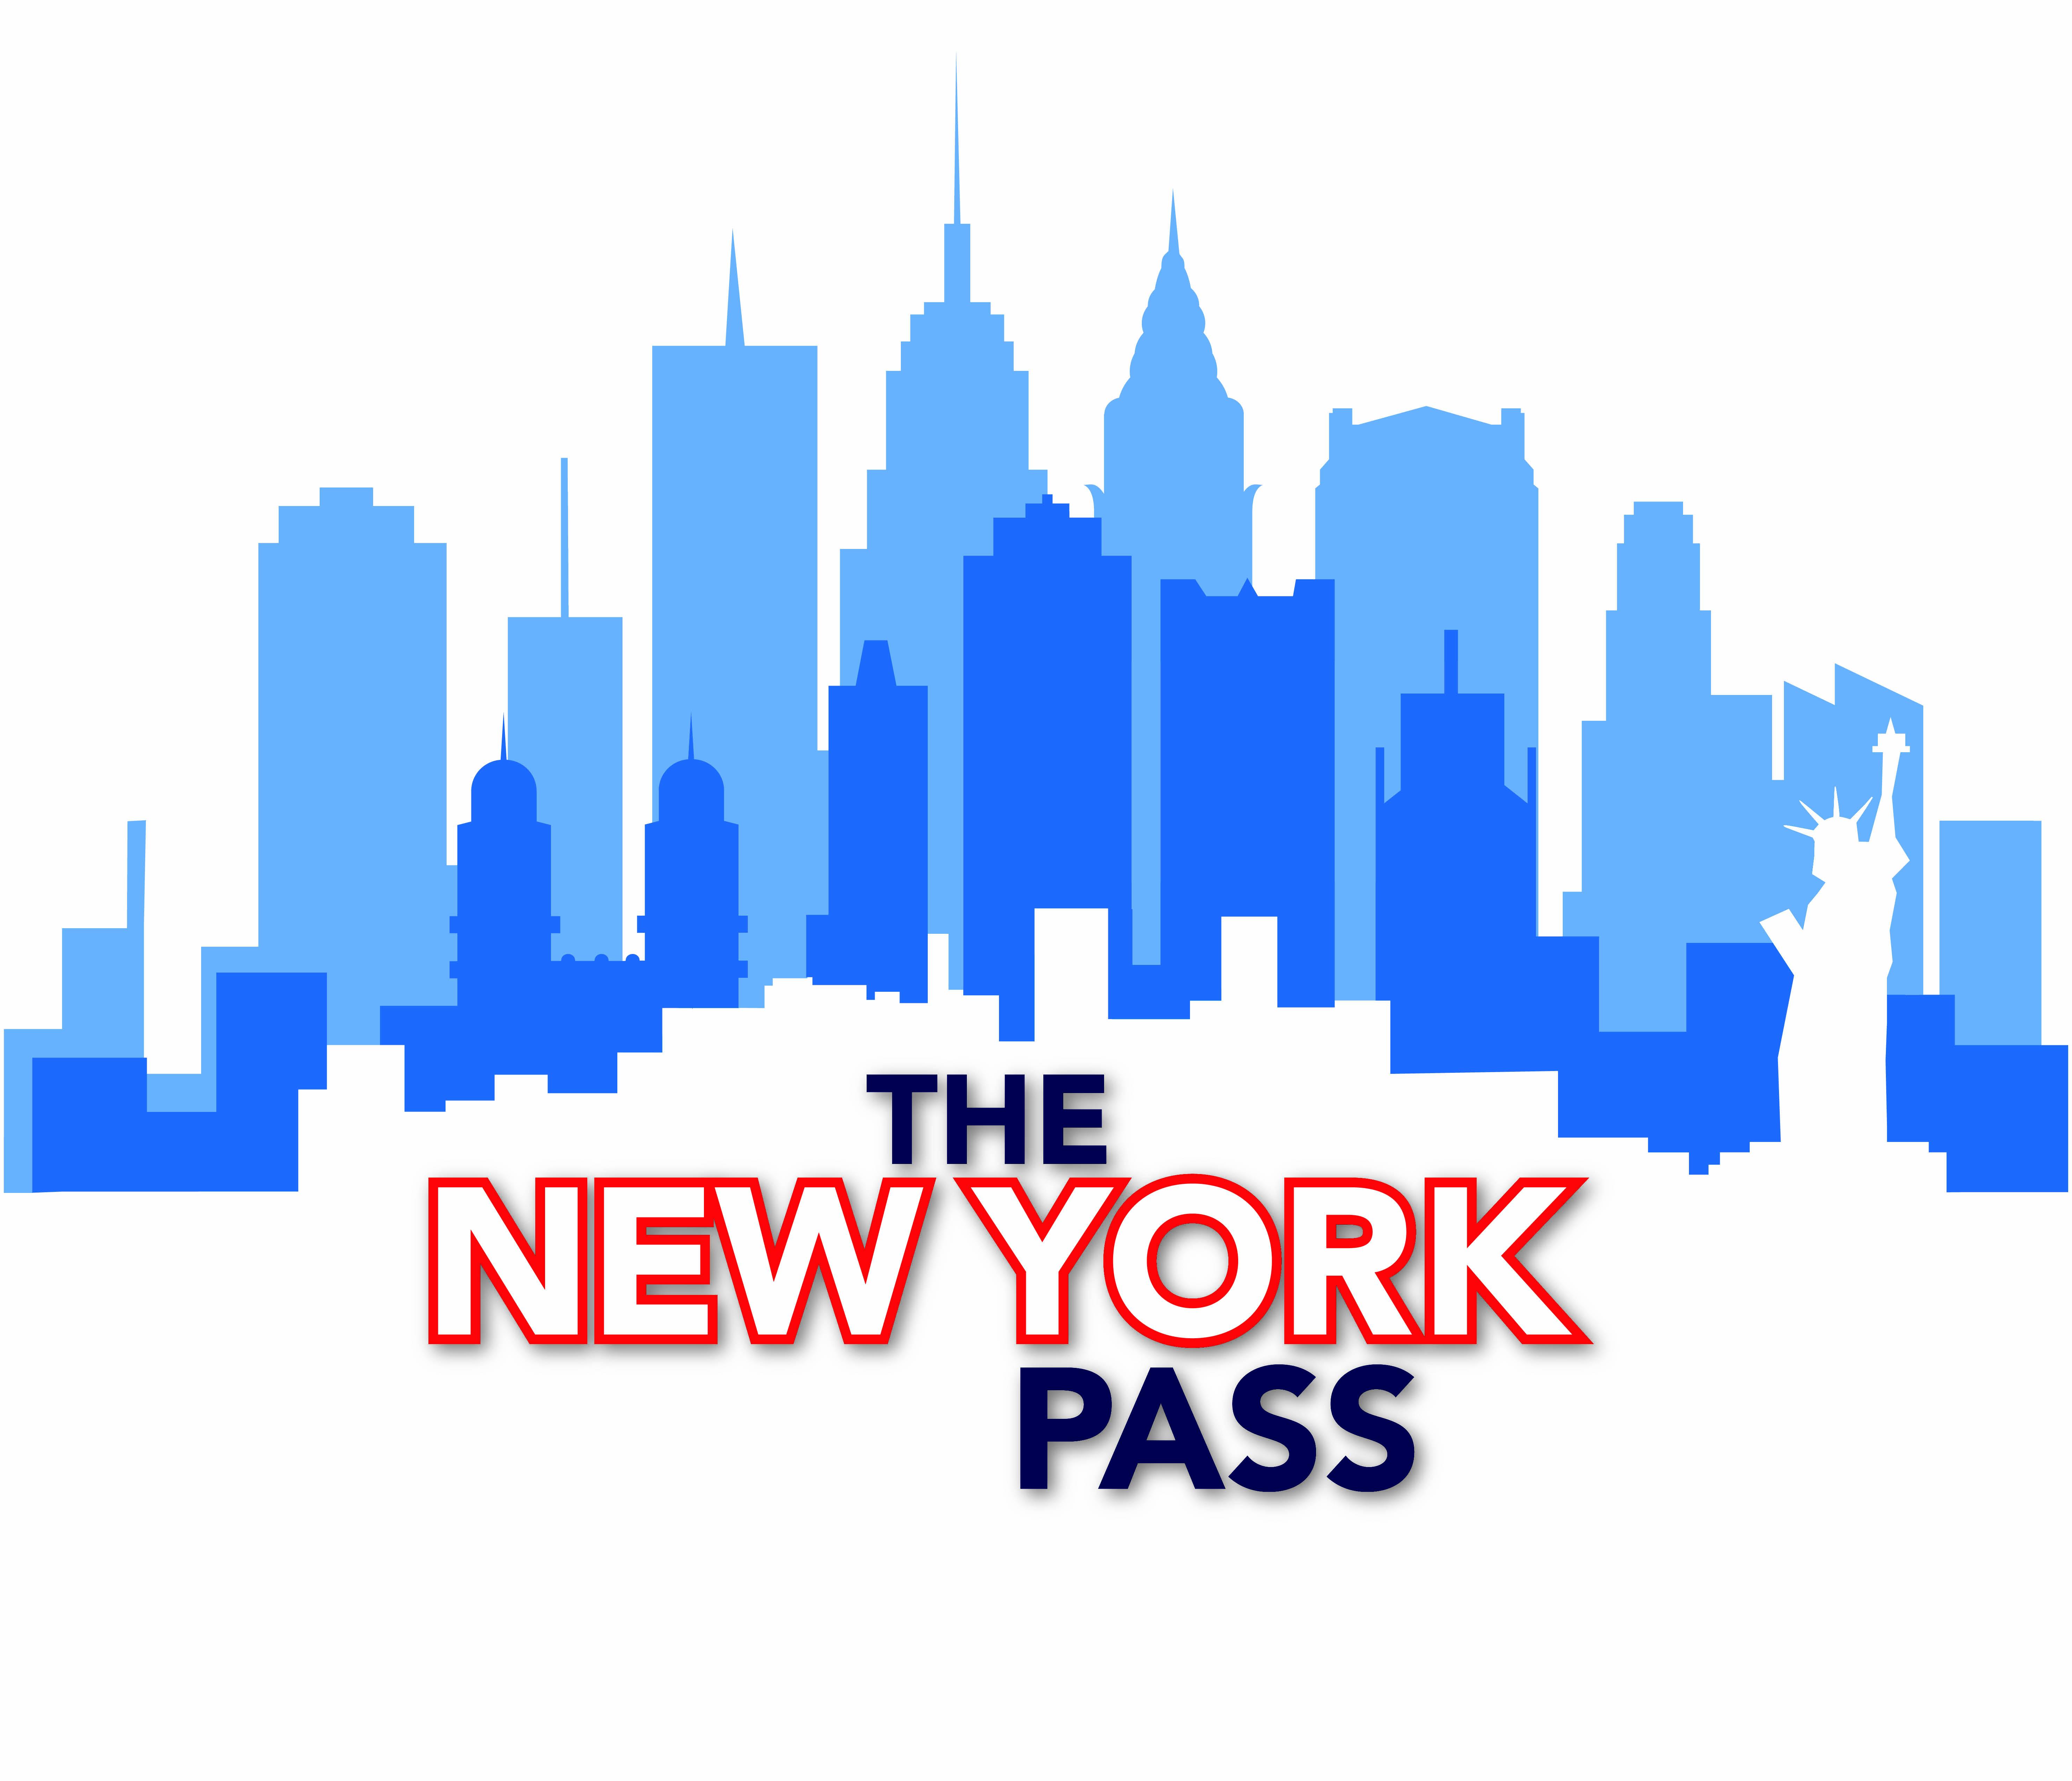 The New York Pass 2016